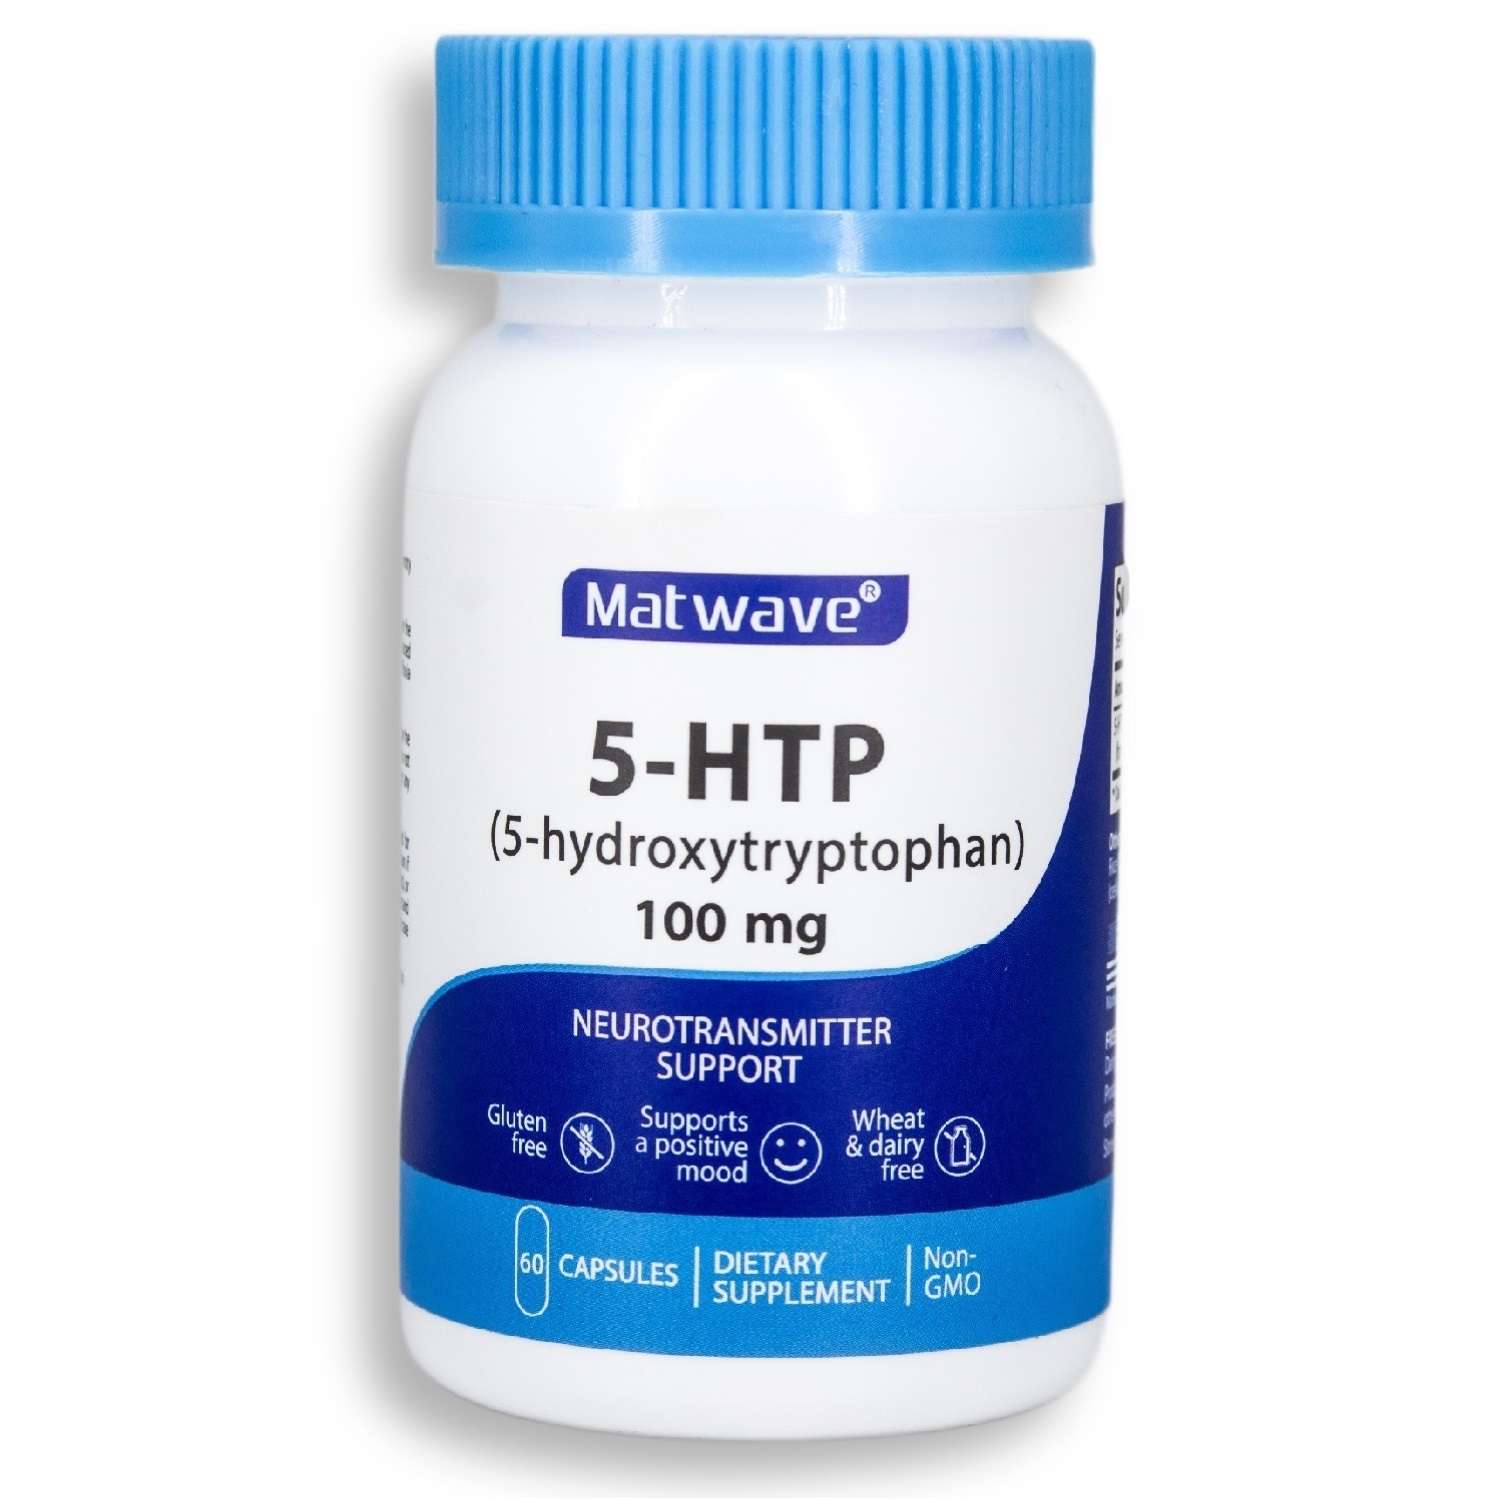 БАД Matwave 5-HTP 100 mg 5-гидрокситриптофан 60 капсул комплект 2 банки - фото 2